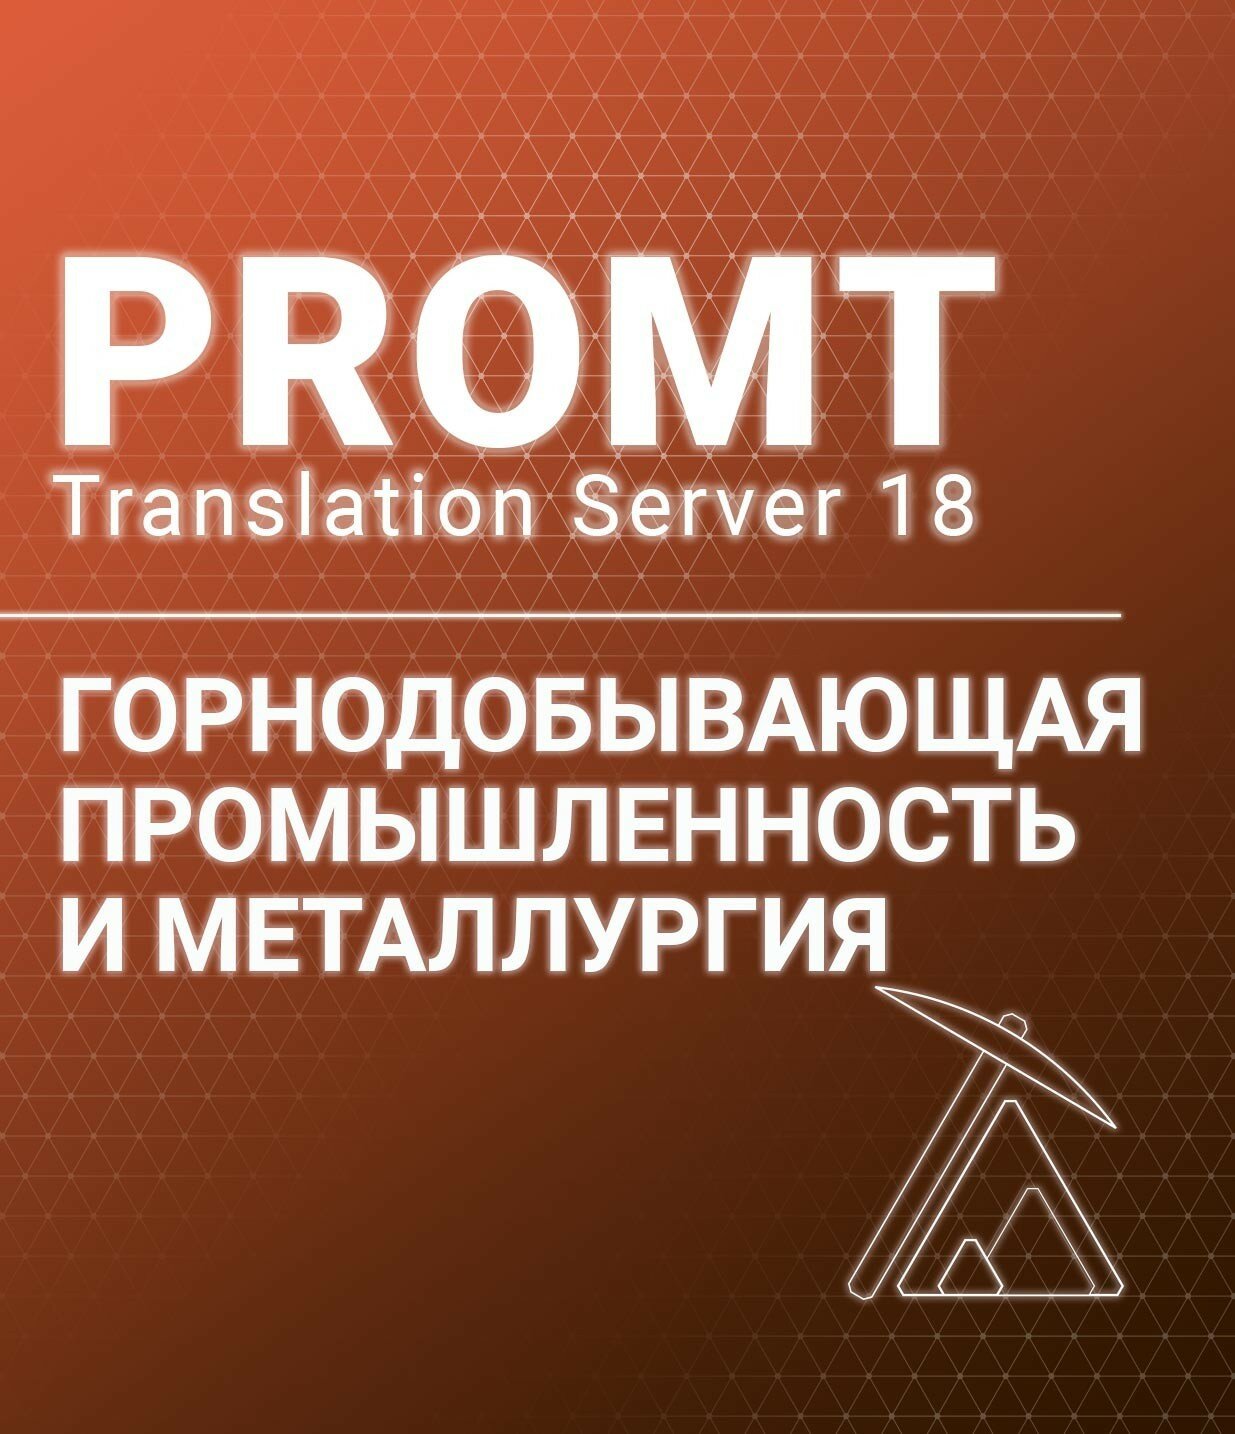 PROMT Professional 20 Многоязычный, Горнодобывающая промышленность и металлургия